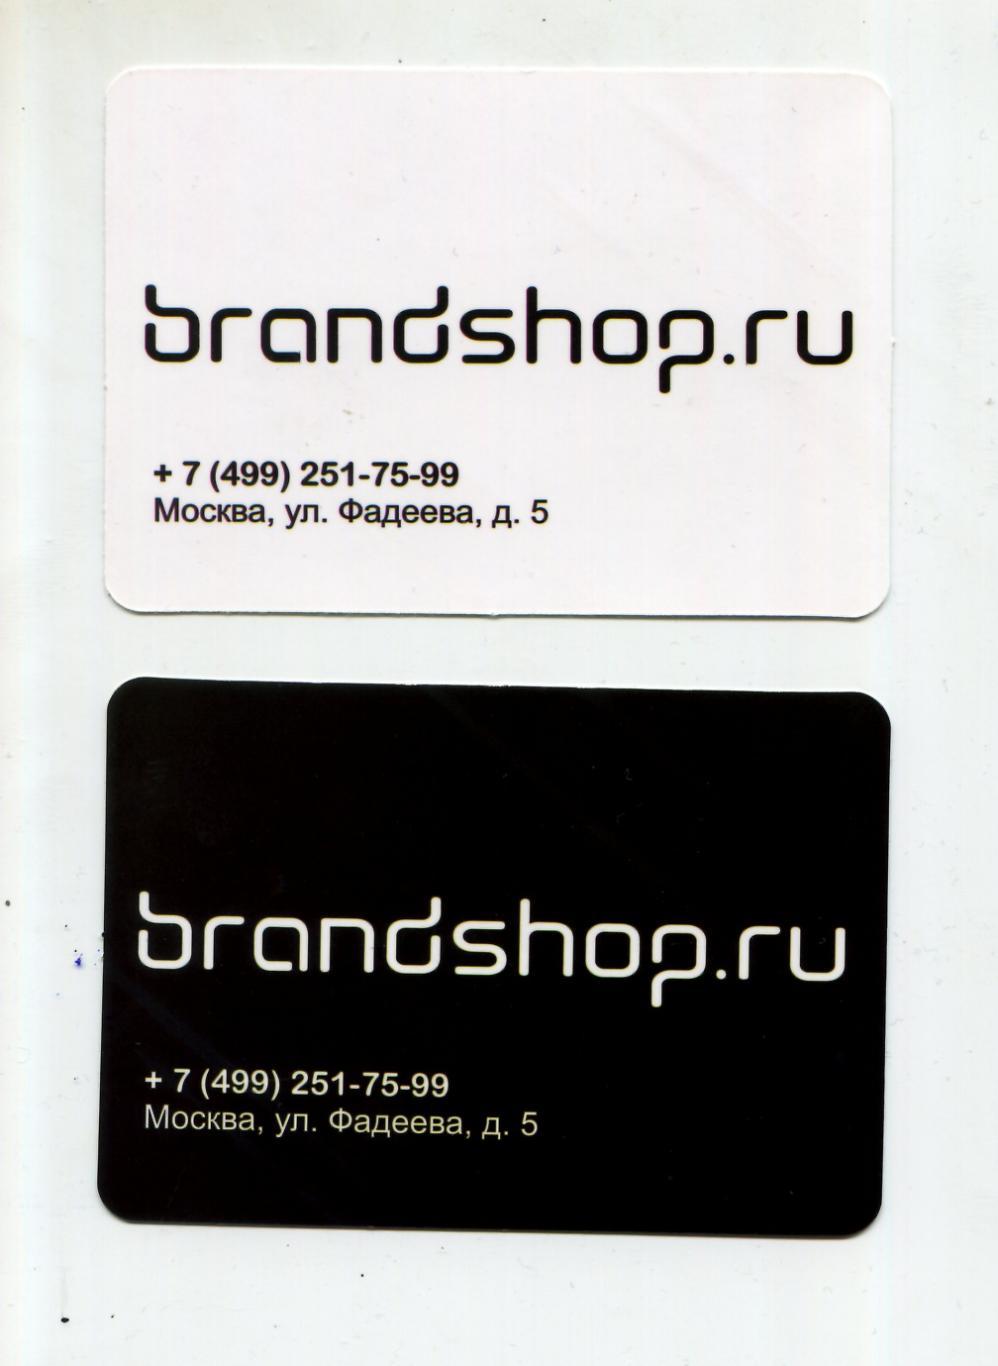 Brandshop.ru